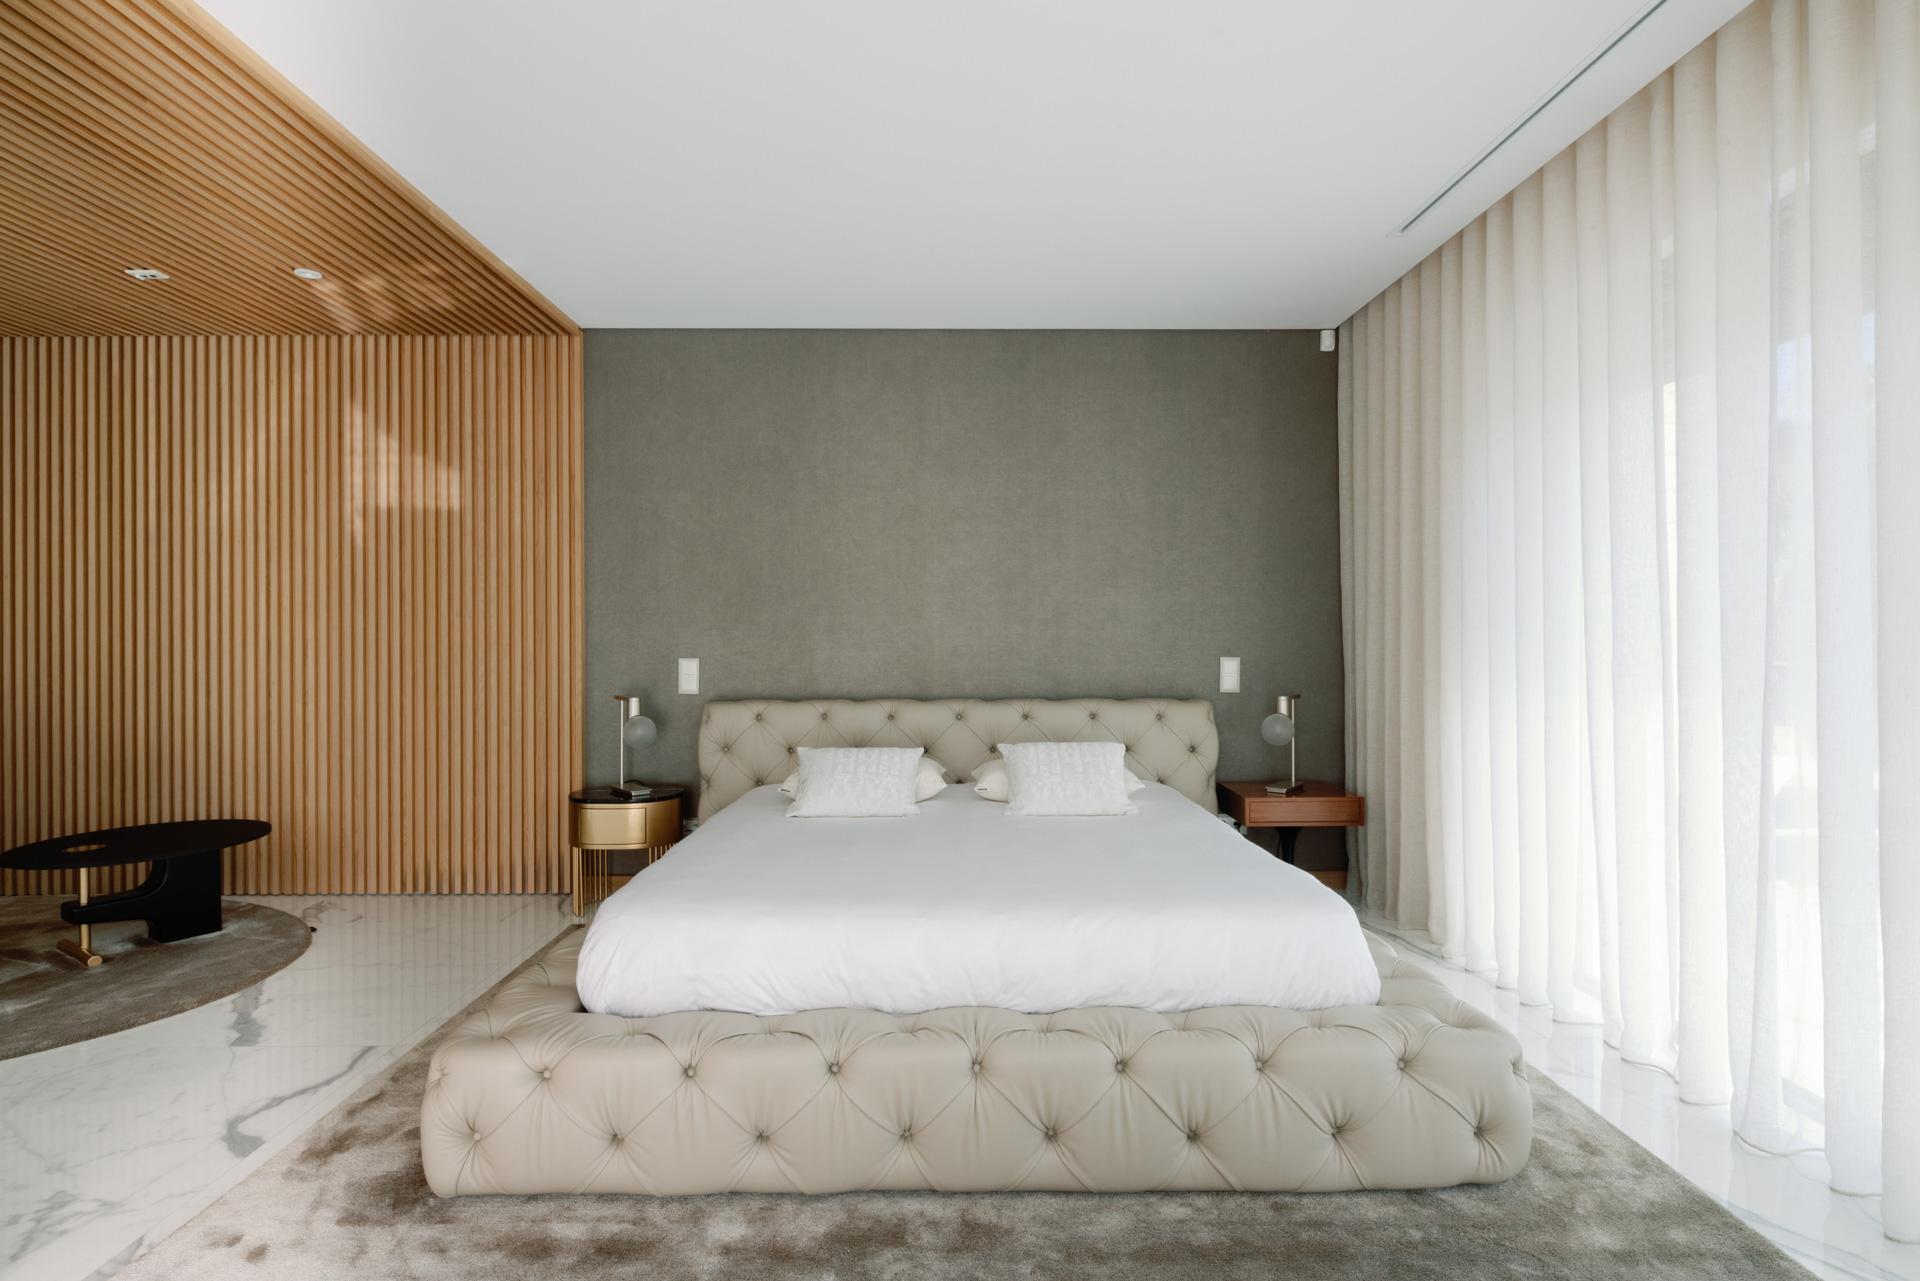 Flauschiges Bett, Modern Collection'S, handgefertigt in Portugal - Europa von GF Modern.

Das elegante Fluffy-Bett ist mit beigem, hochwertigem italienischem Capitonnè-Effektleder bezogen und verbindet modernen Komfort mit eleganten Details. Der